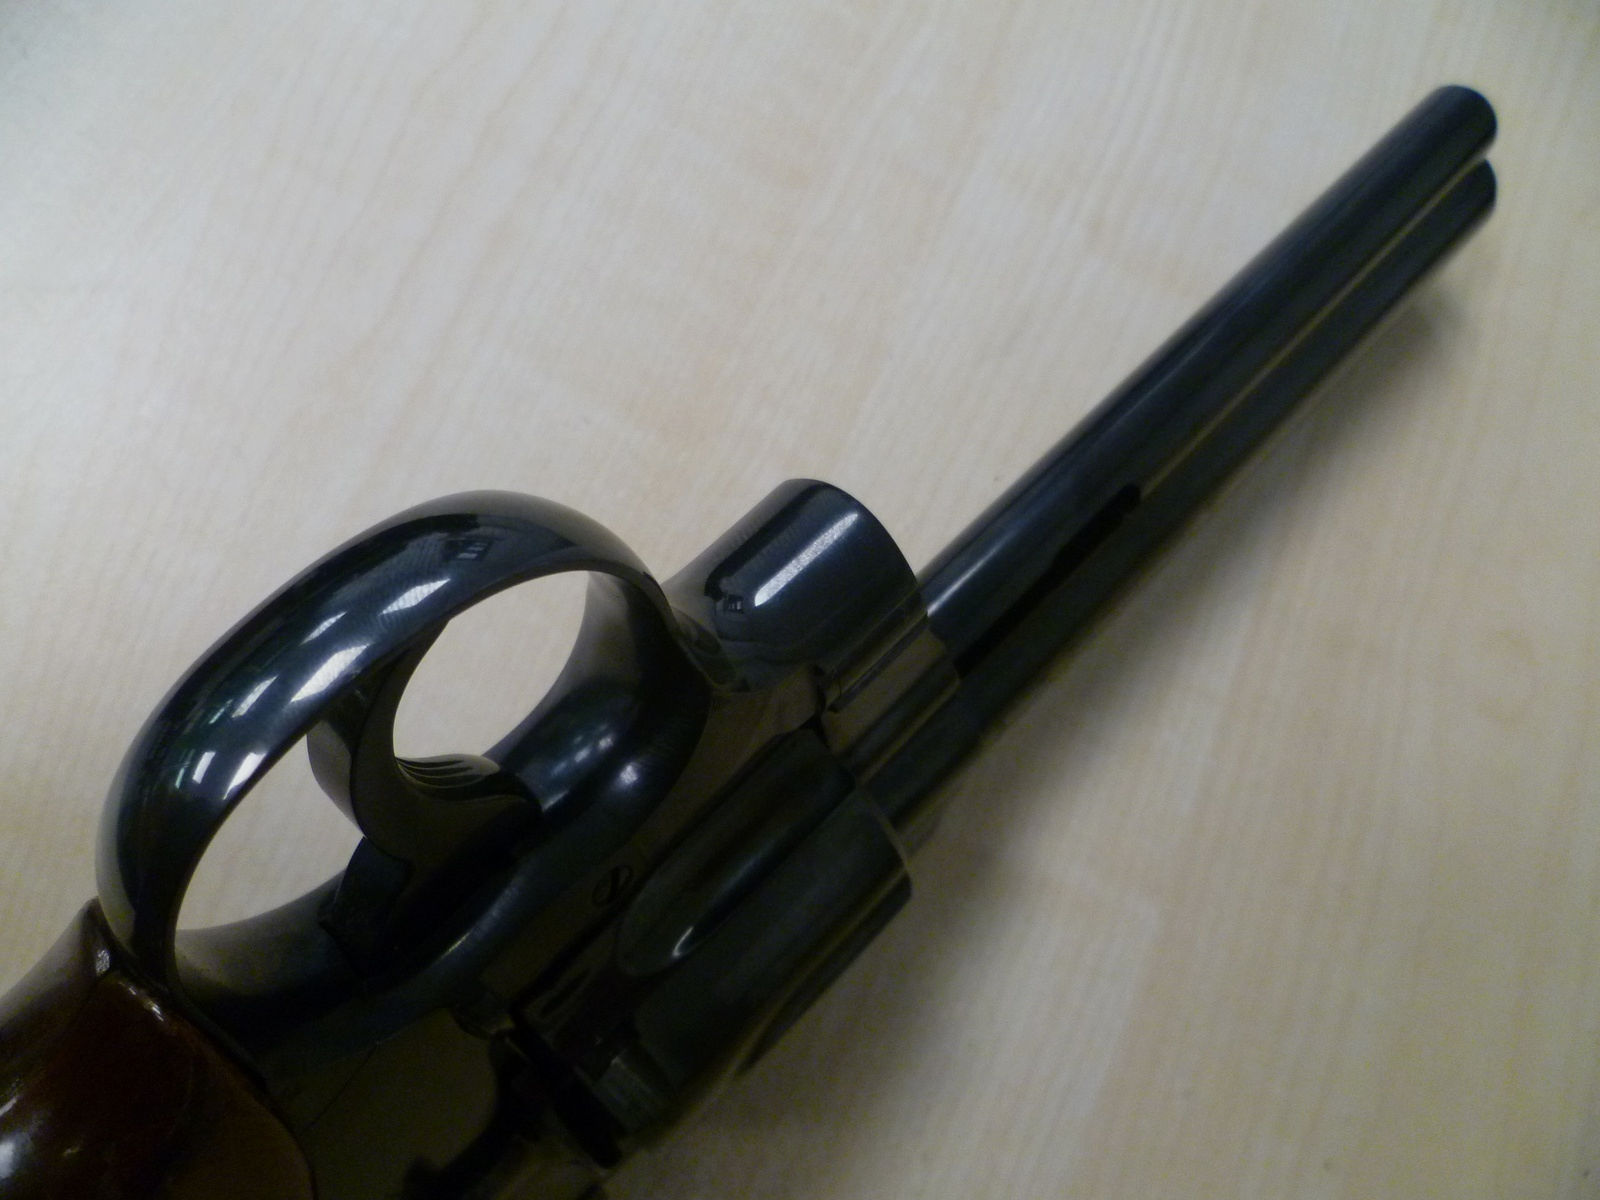 Revolver Colt Python 357 .357 Magnum Baujahr 1966